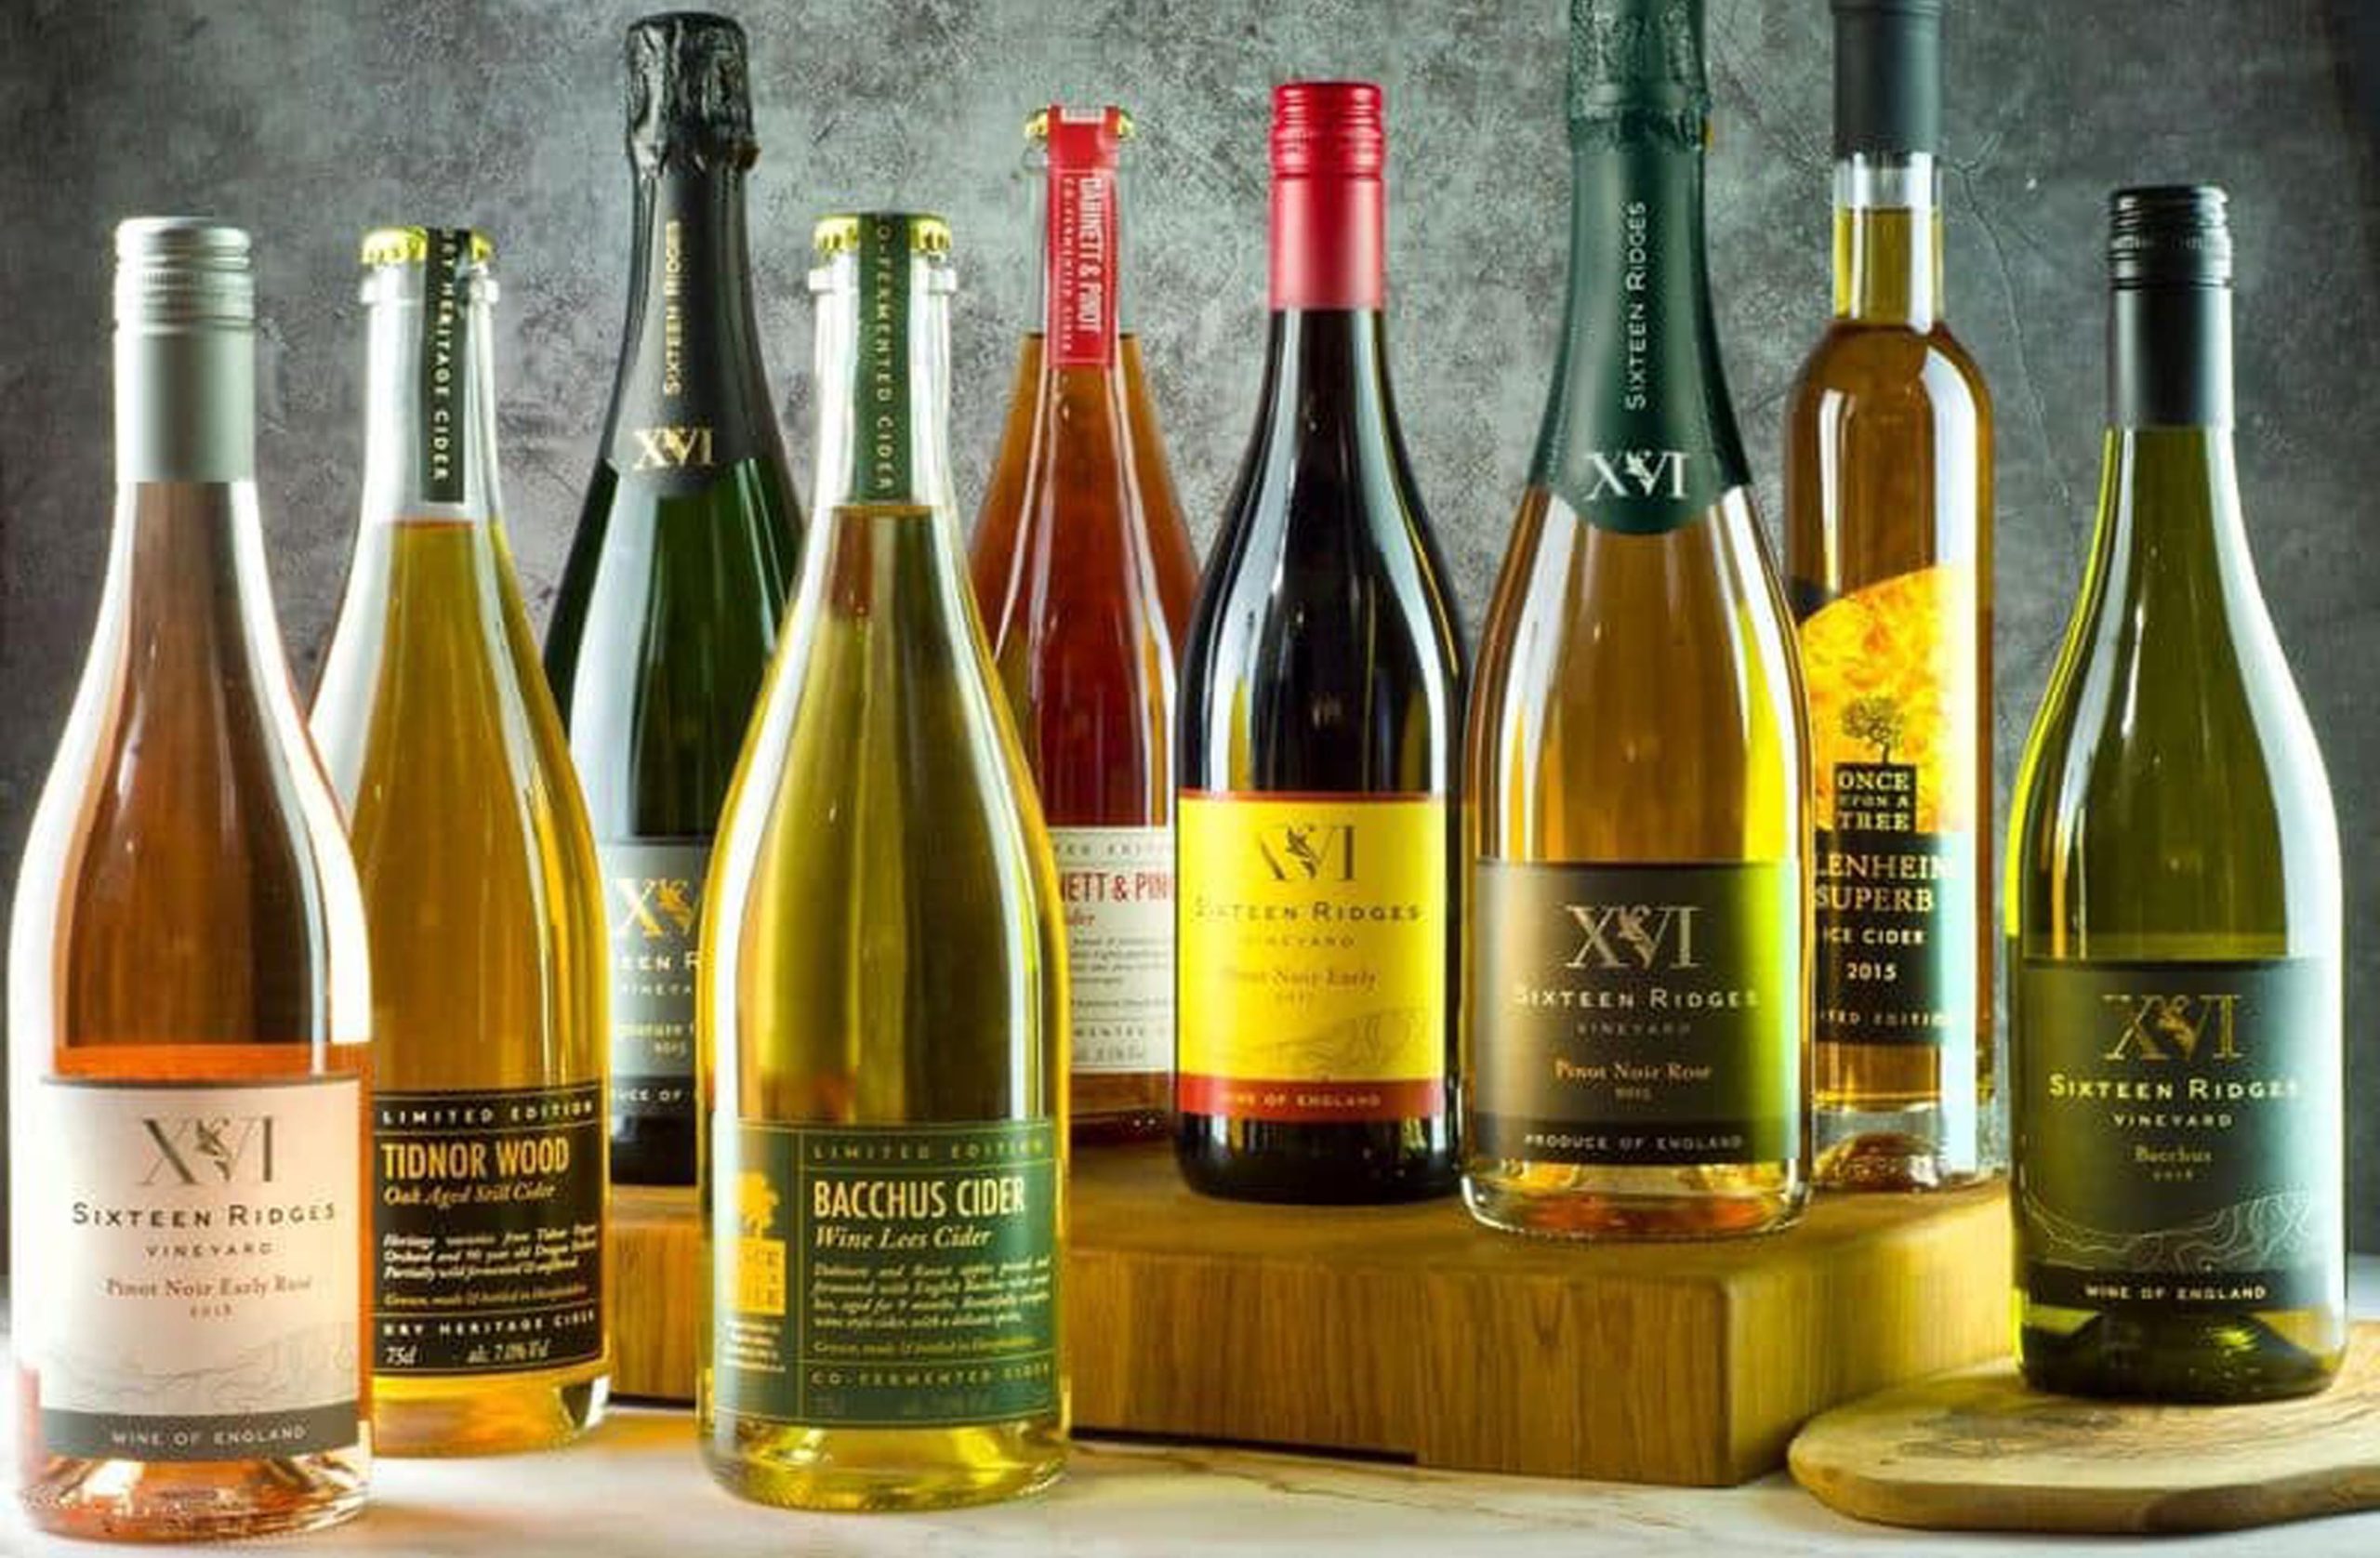 Wine and cider bottle labels